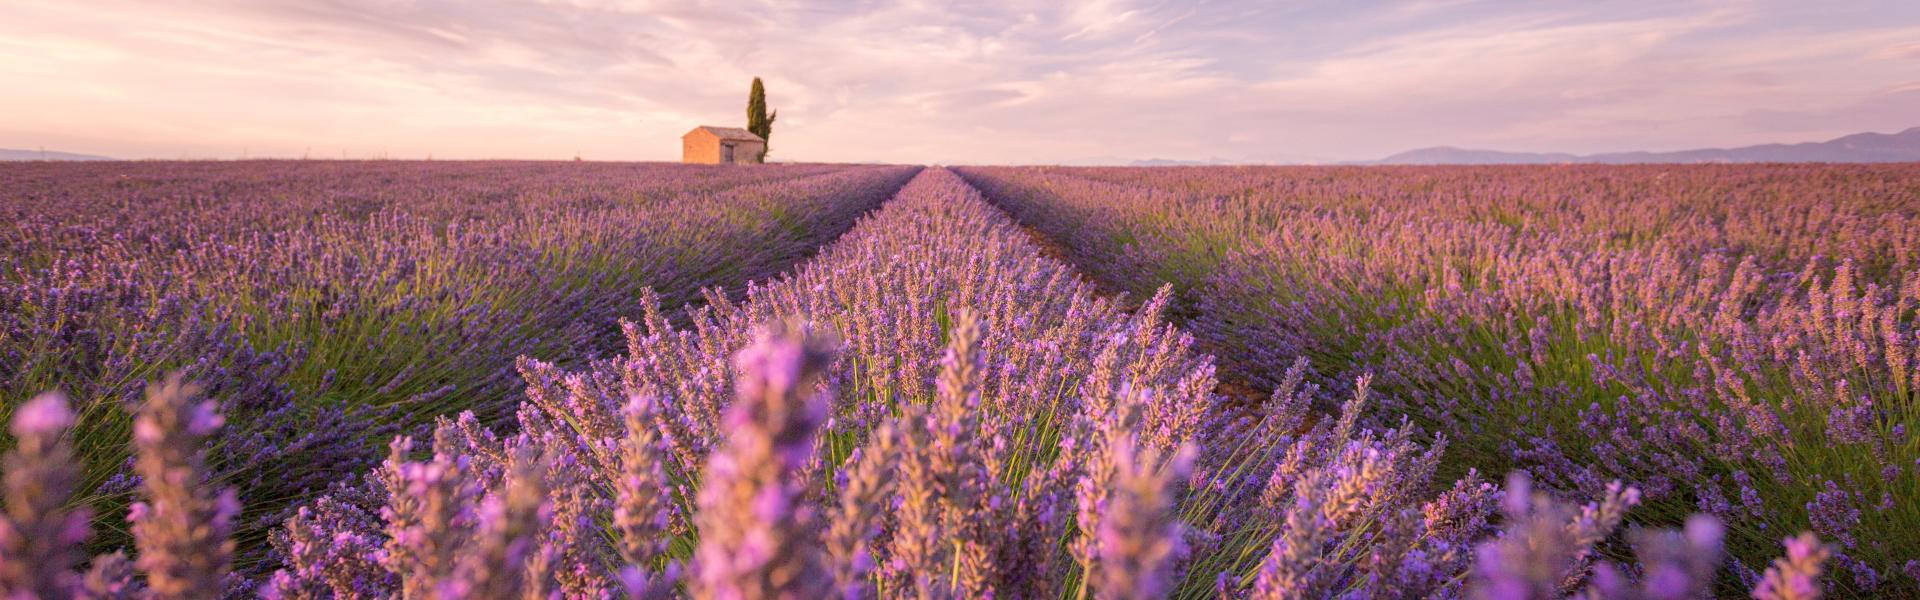 Provence Natural View